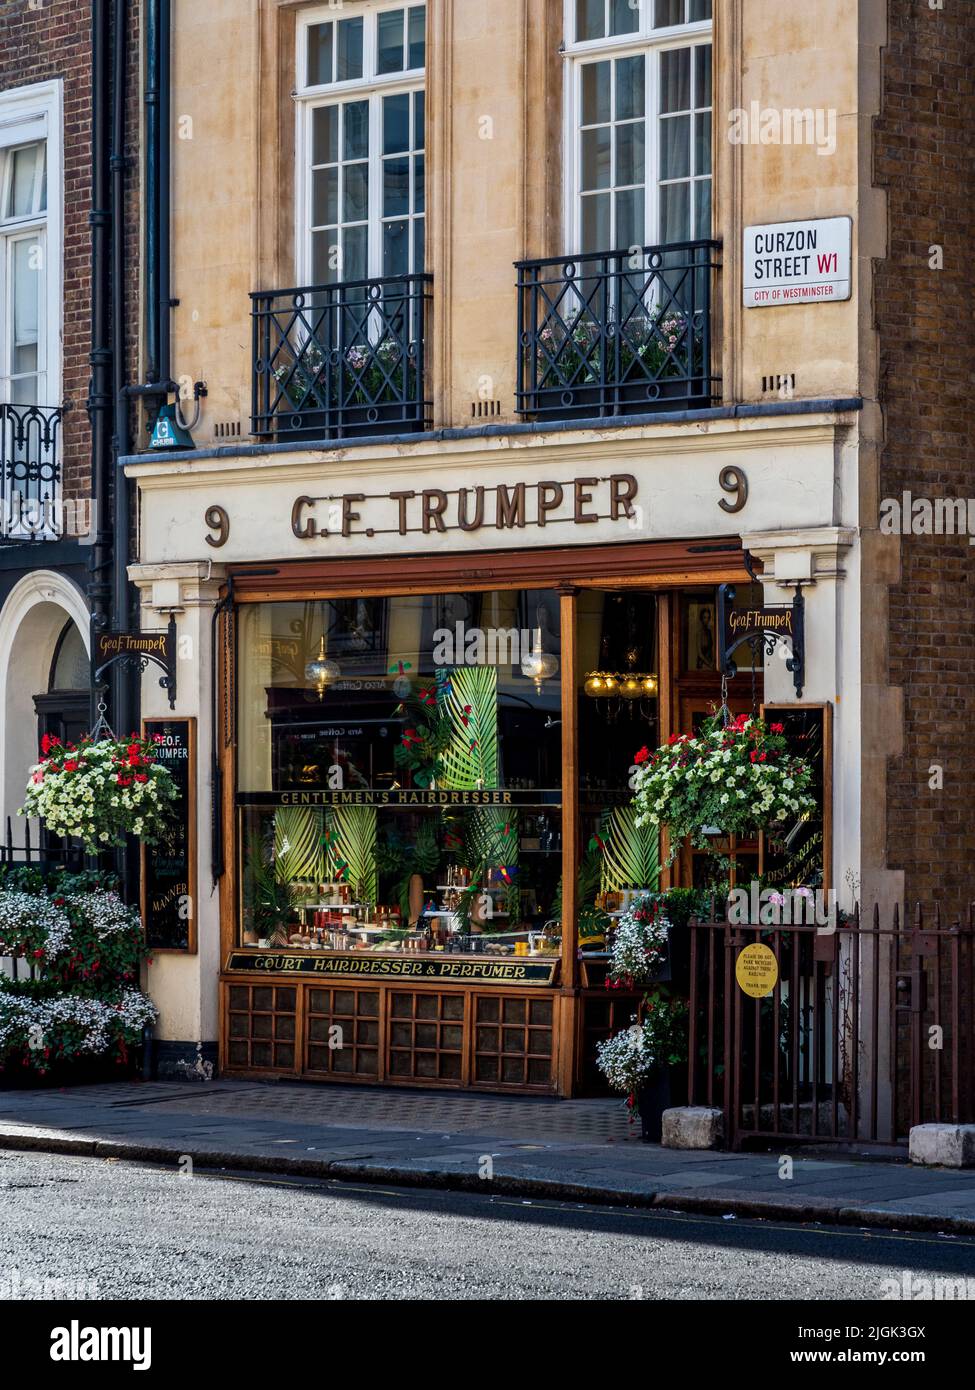 G F Trumper su Curzon St Mayfair London - George F Trumper o Geo.org. F. Trumper è un barbiere, parrucchiere e profumiere britannico fondato nel 1875 a Londra. Foto Stock